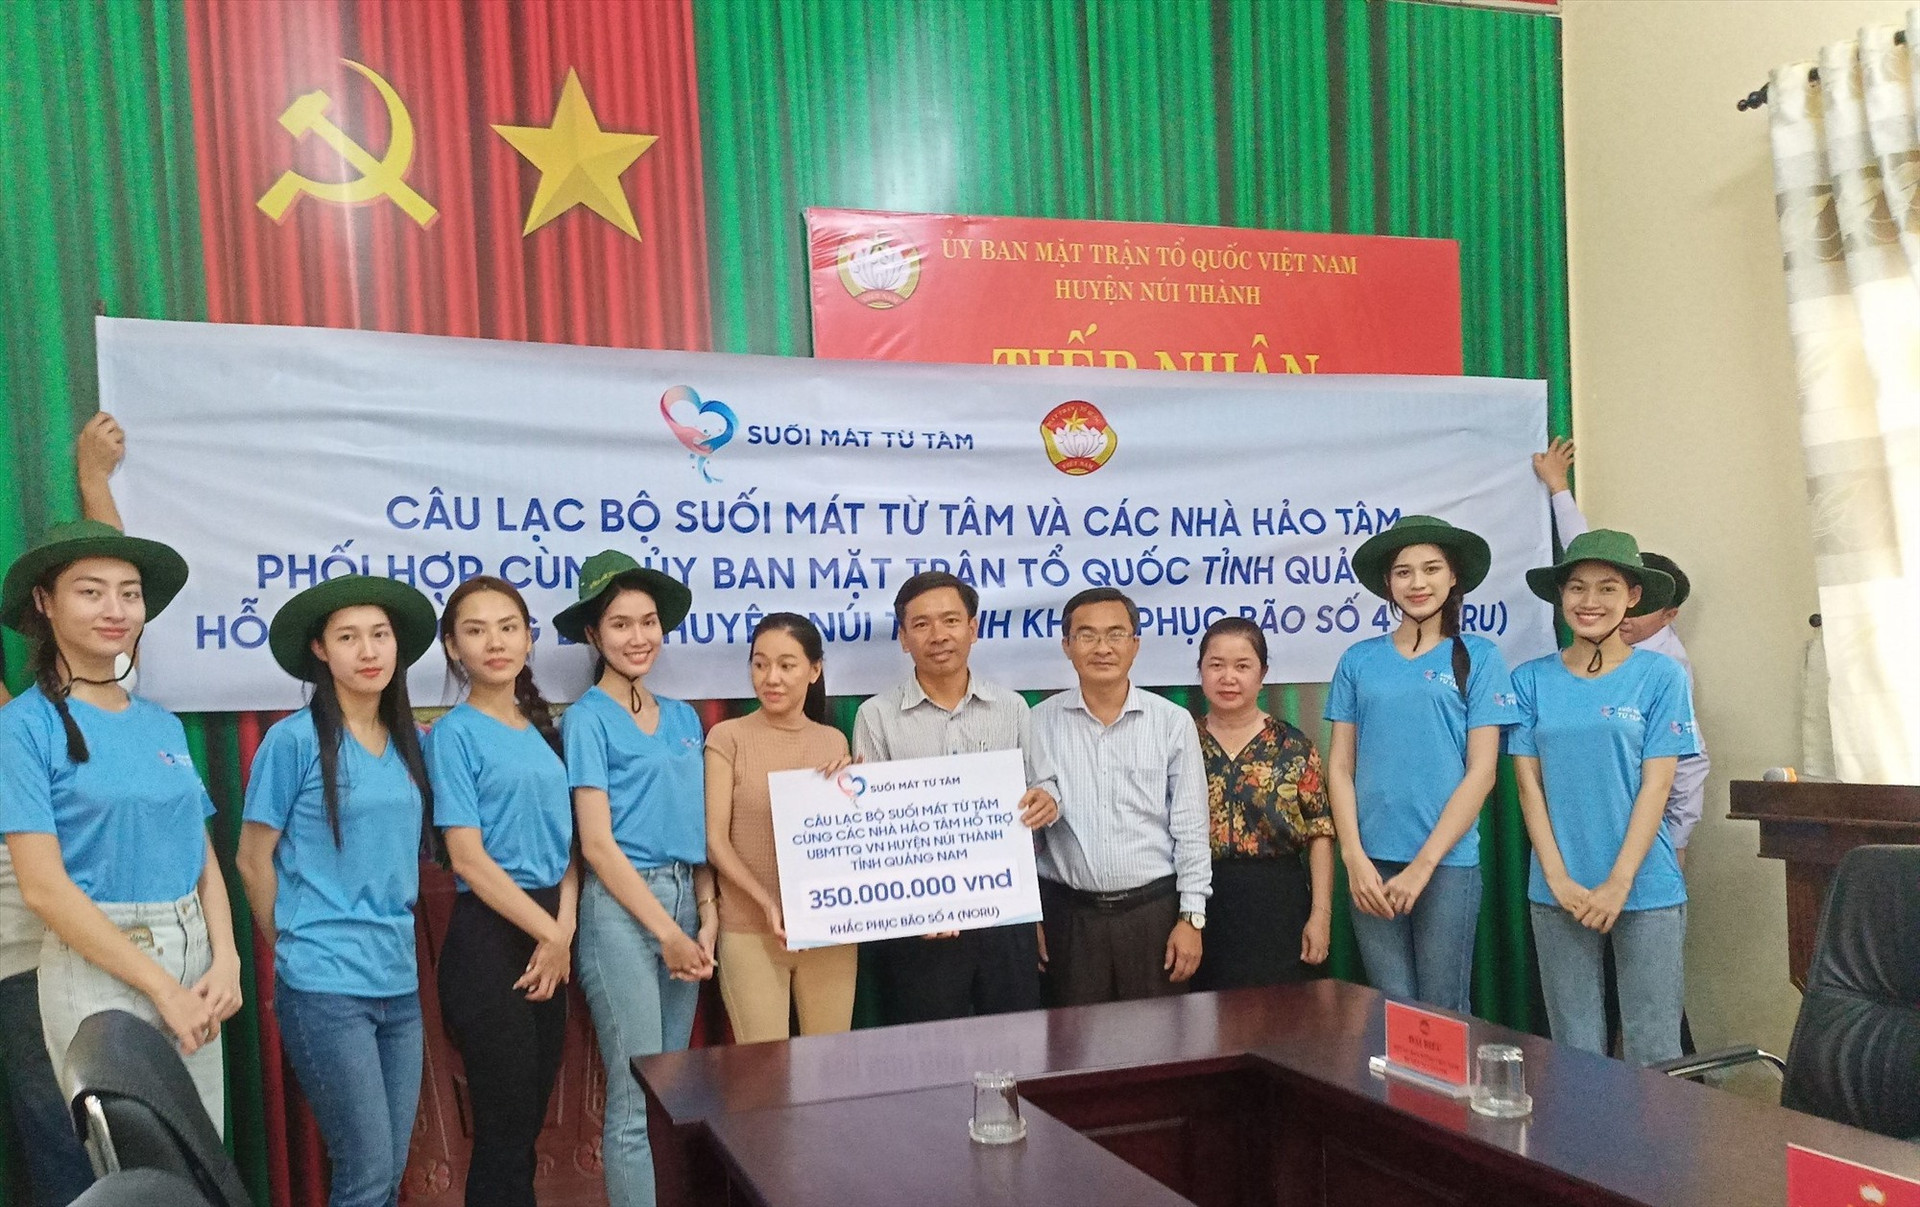 Câu lạc bộ Suối Mát Từ Tâm còn trao cho Ủy ban MTTQ Việt Nam huyện Núi Thành 350 triệu đồng tiền mặt và nhiều nhu yếu phẩm